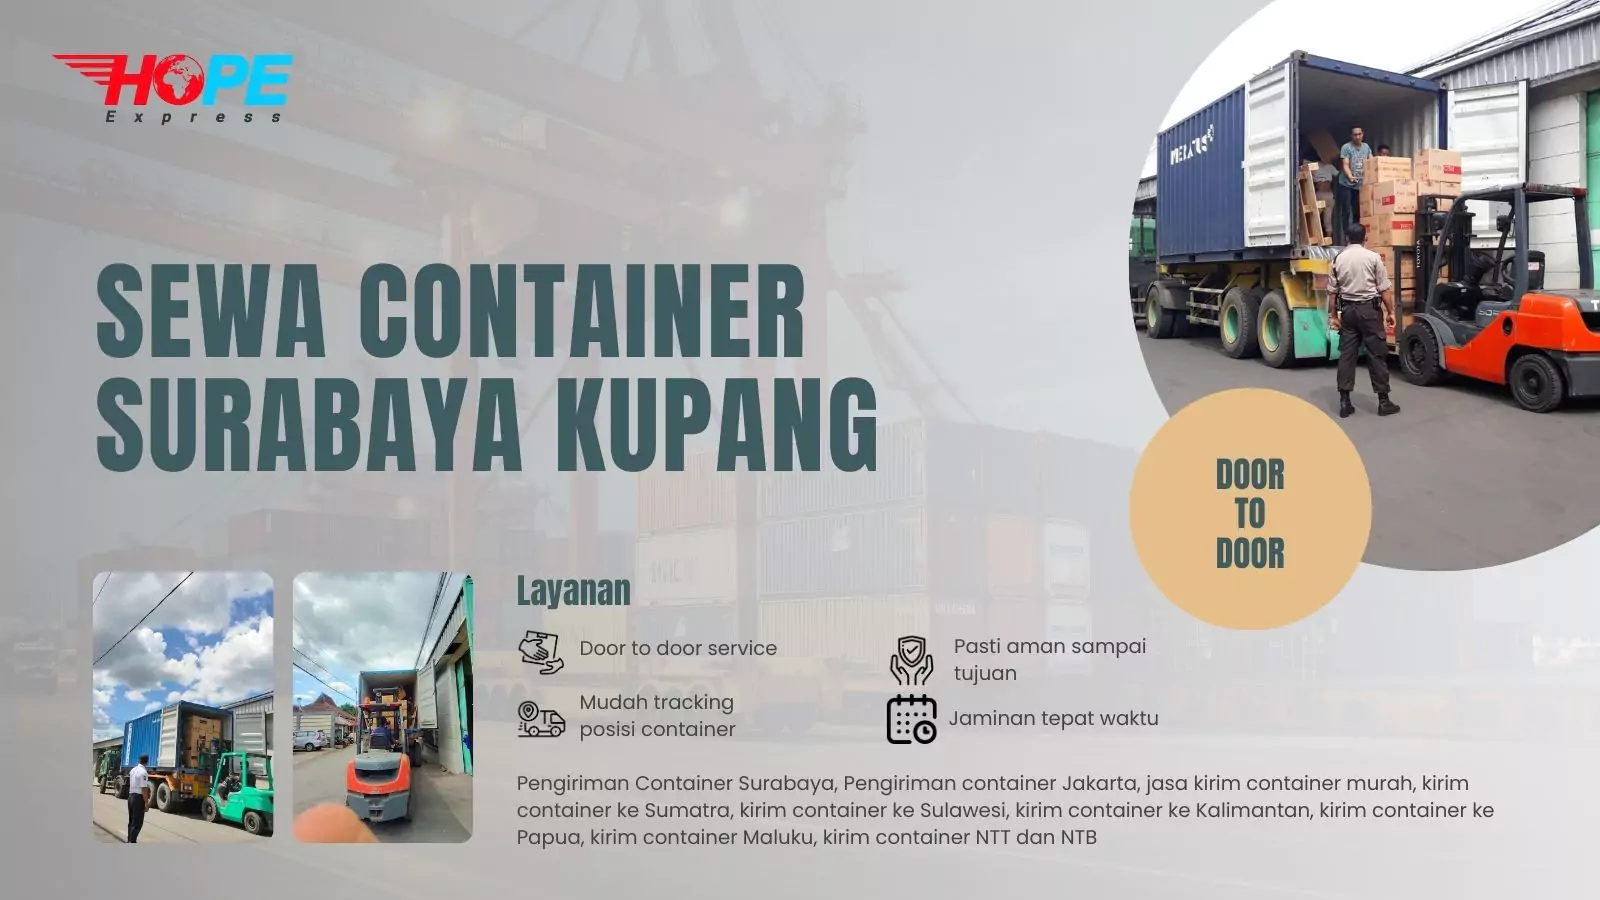 Sewa Container Surabaya Kupang